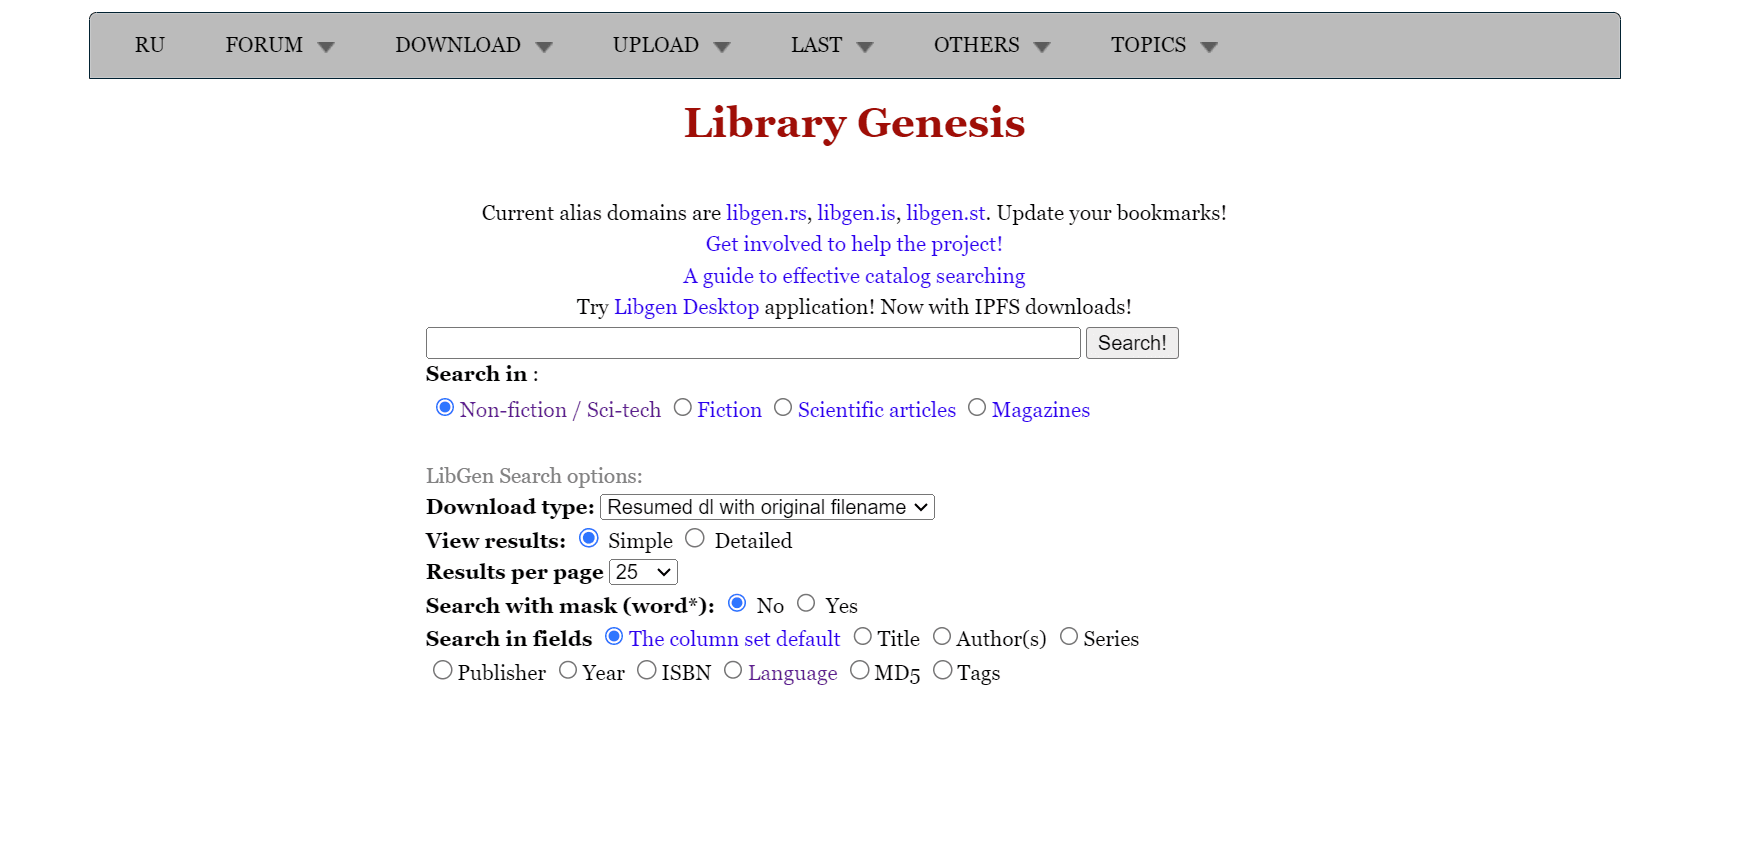 1. Library Genesis